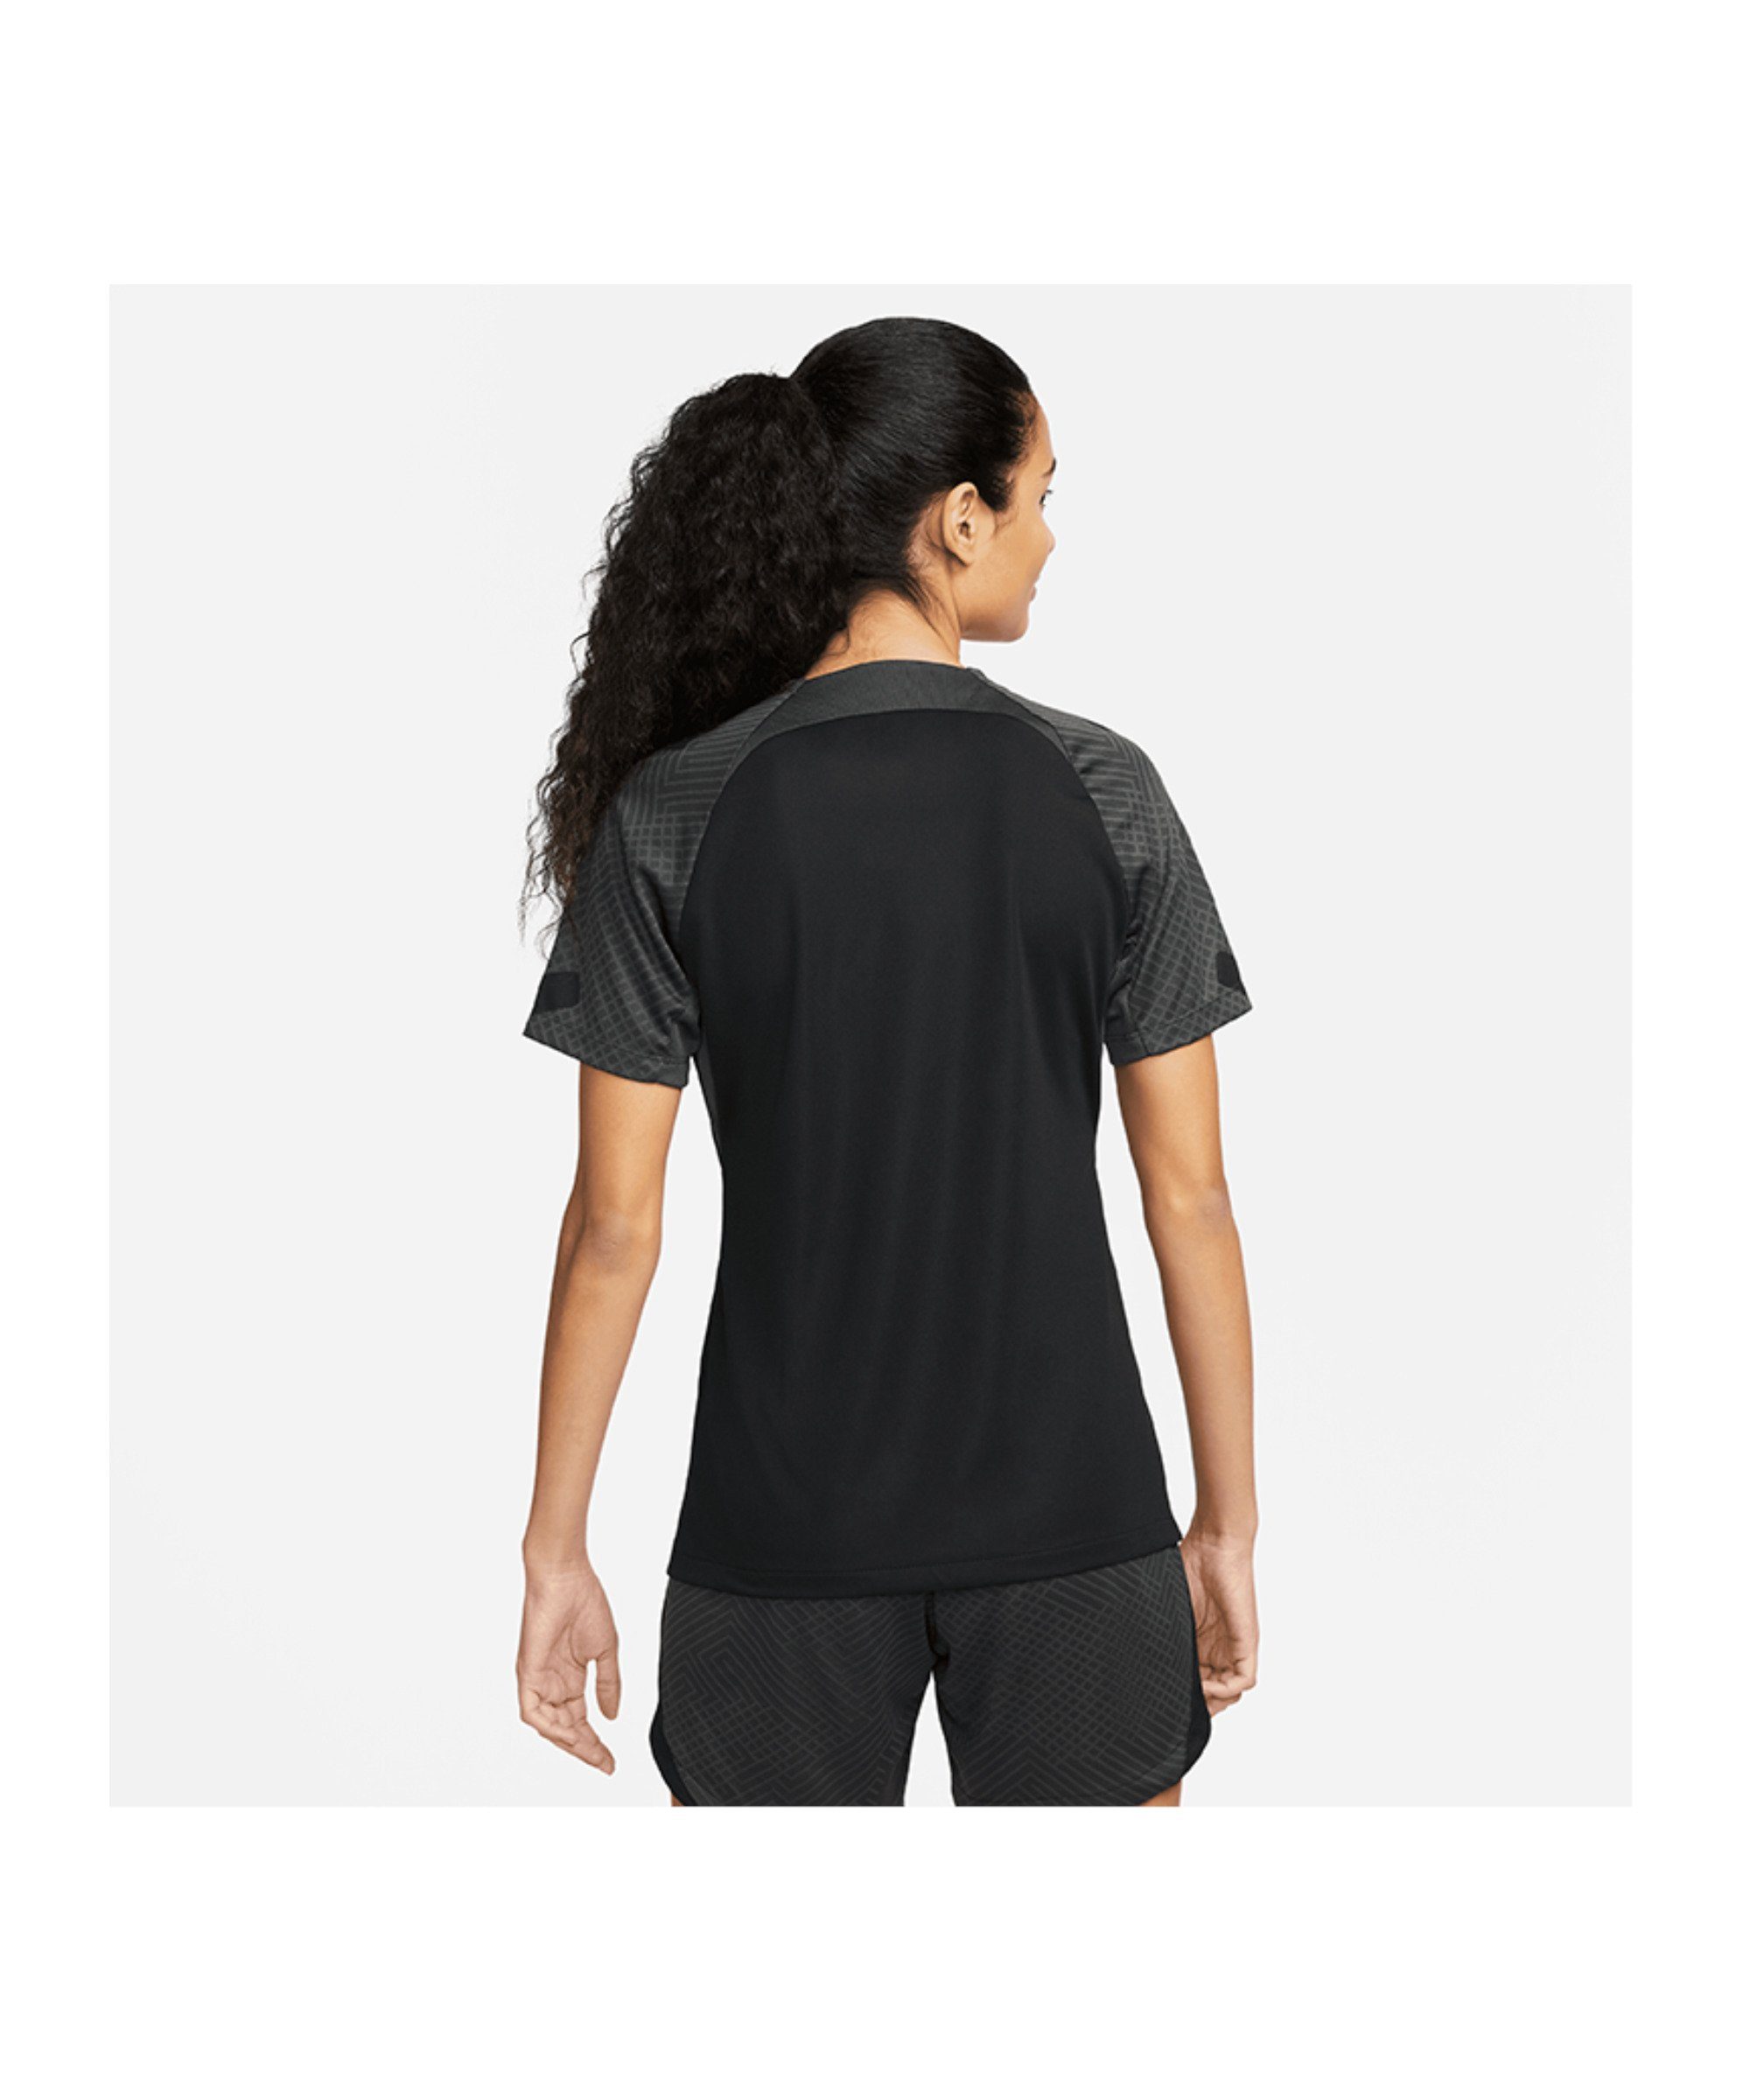 Damen default Nike T-Shirt grauweiss Strike T-Shirt